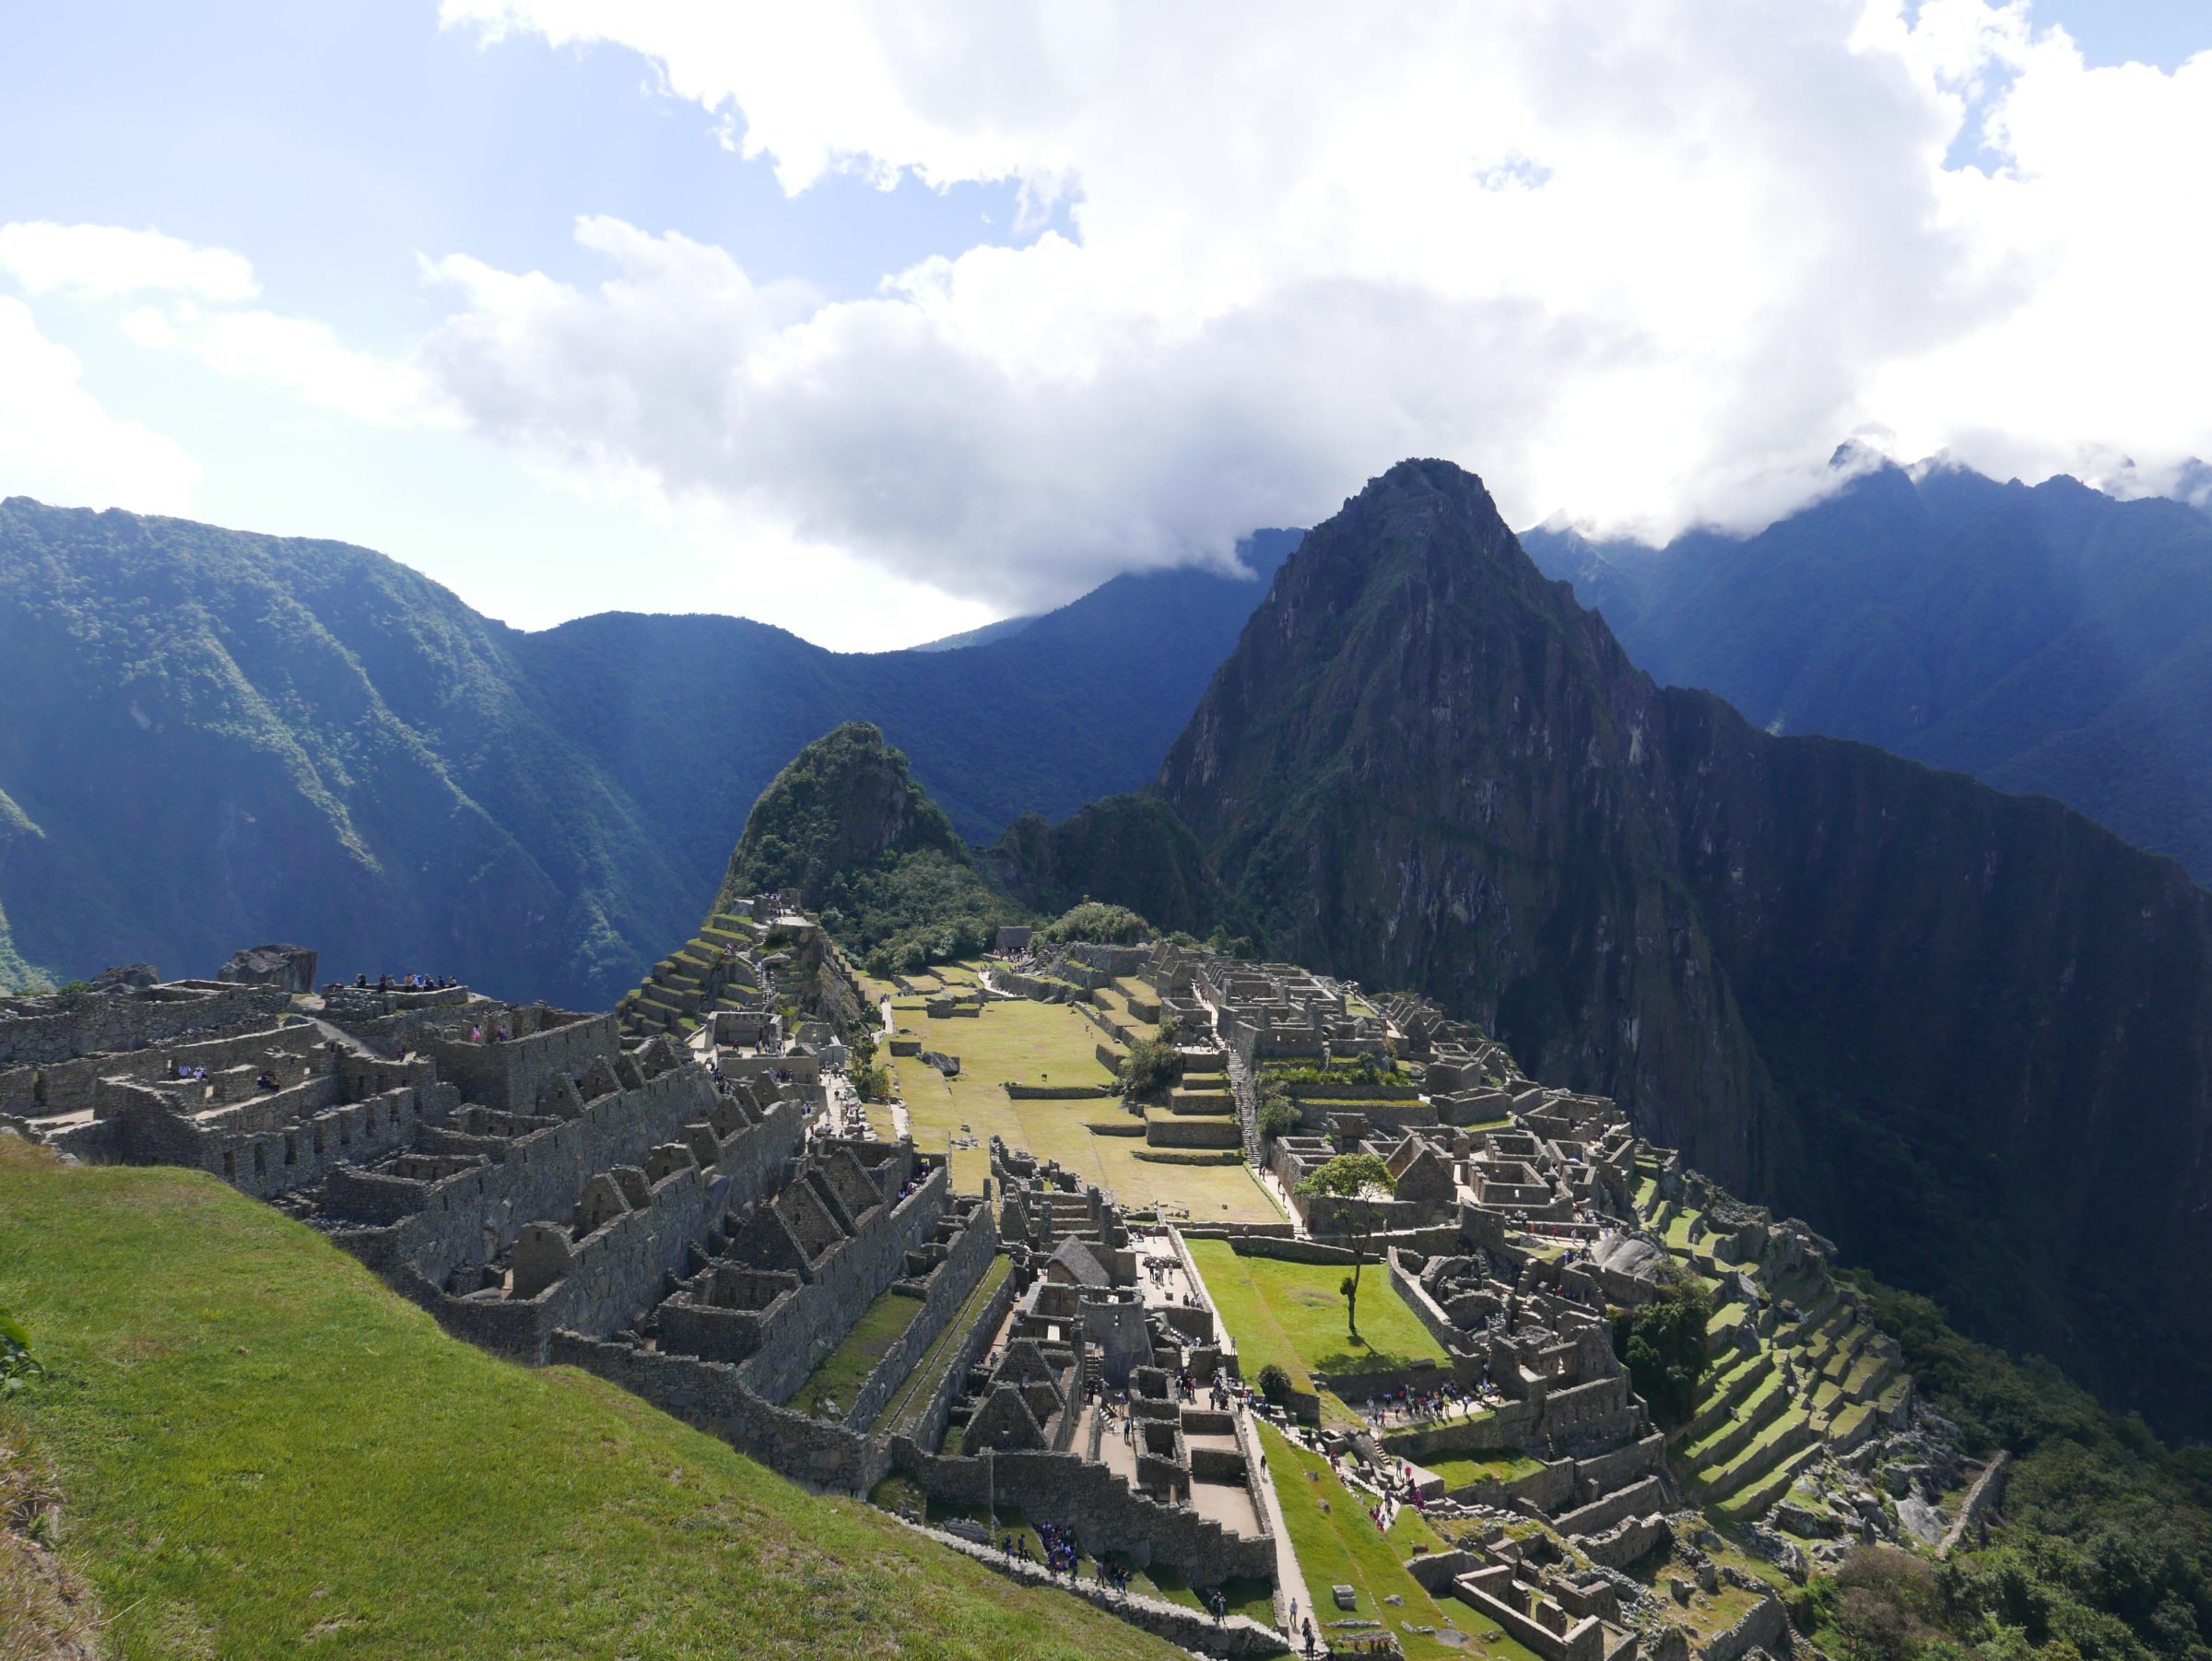 Machu Picchu Inca Civilization ruins on the mountains of Cusco Region in Peru